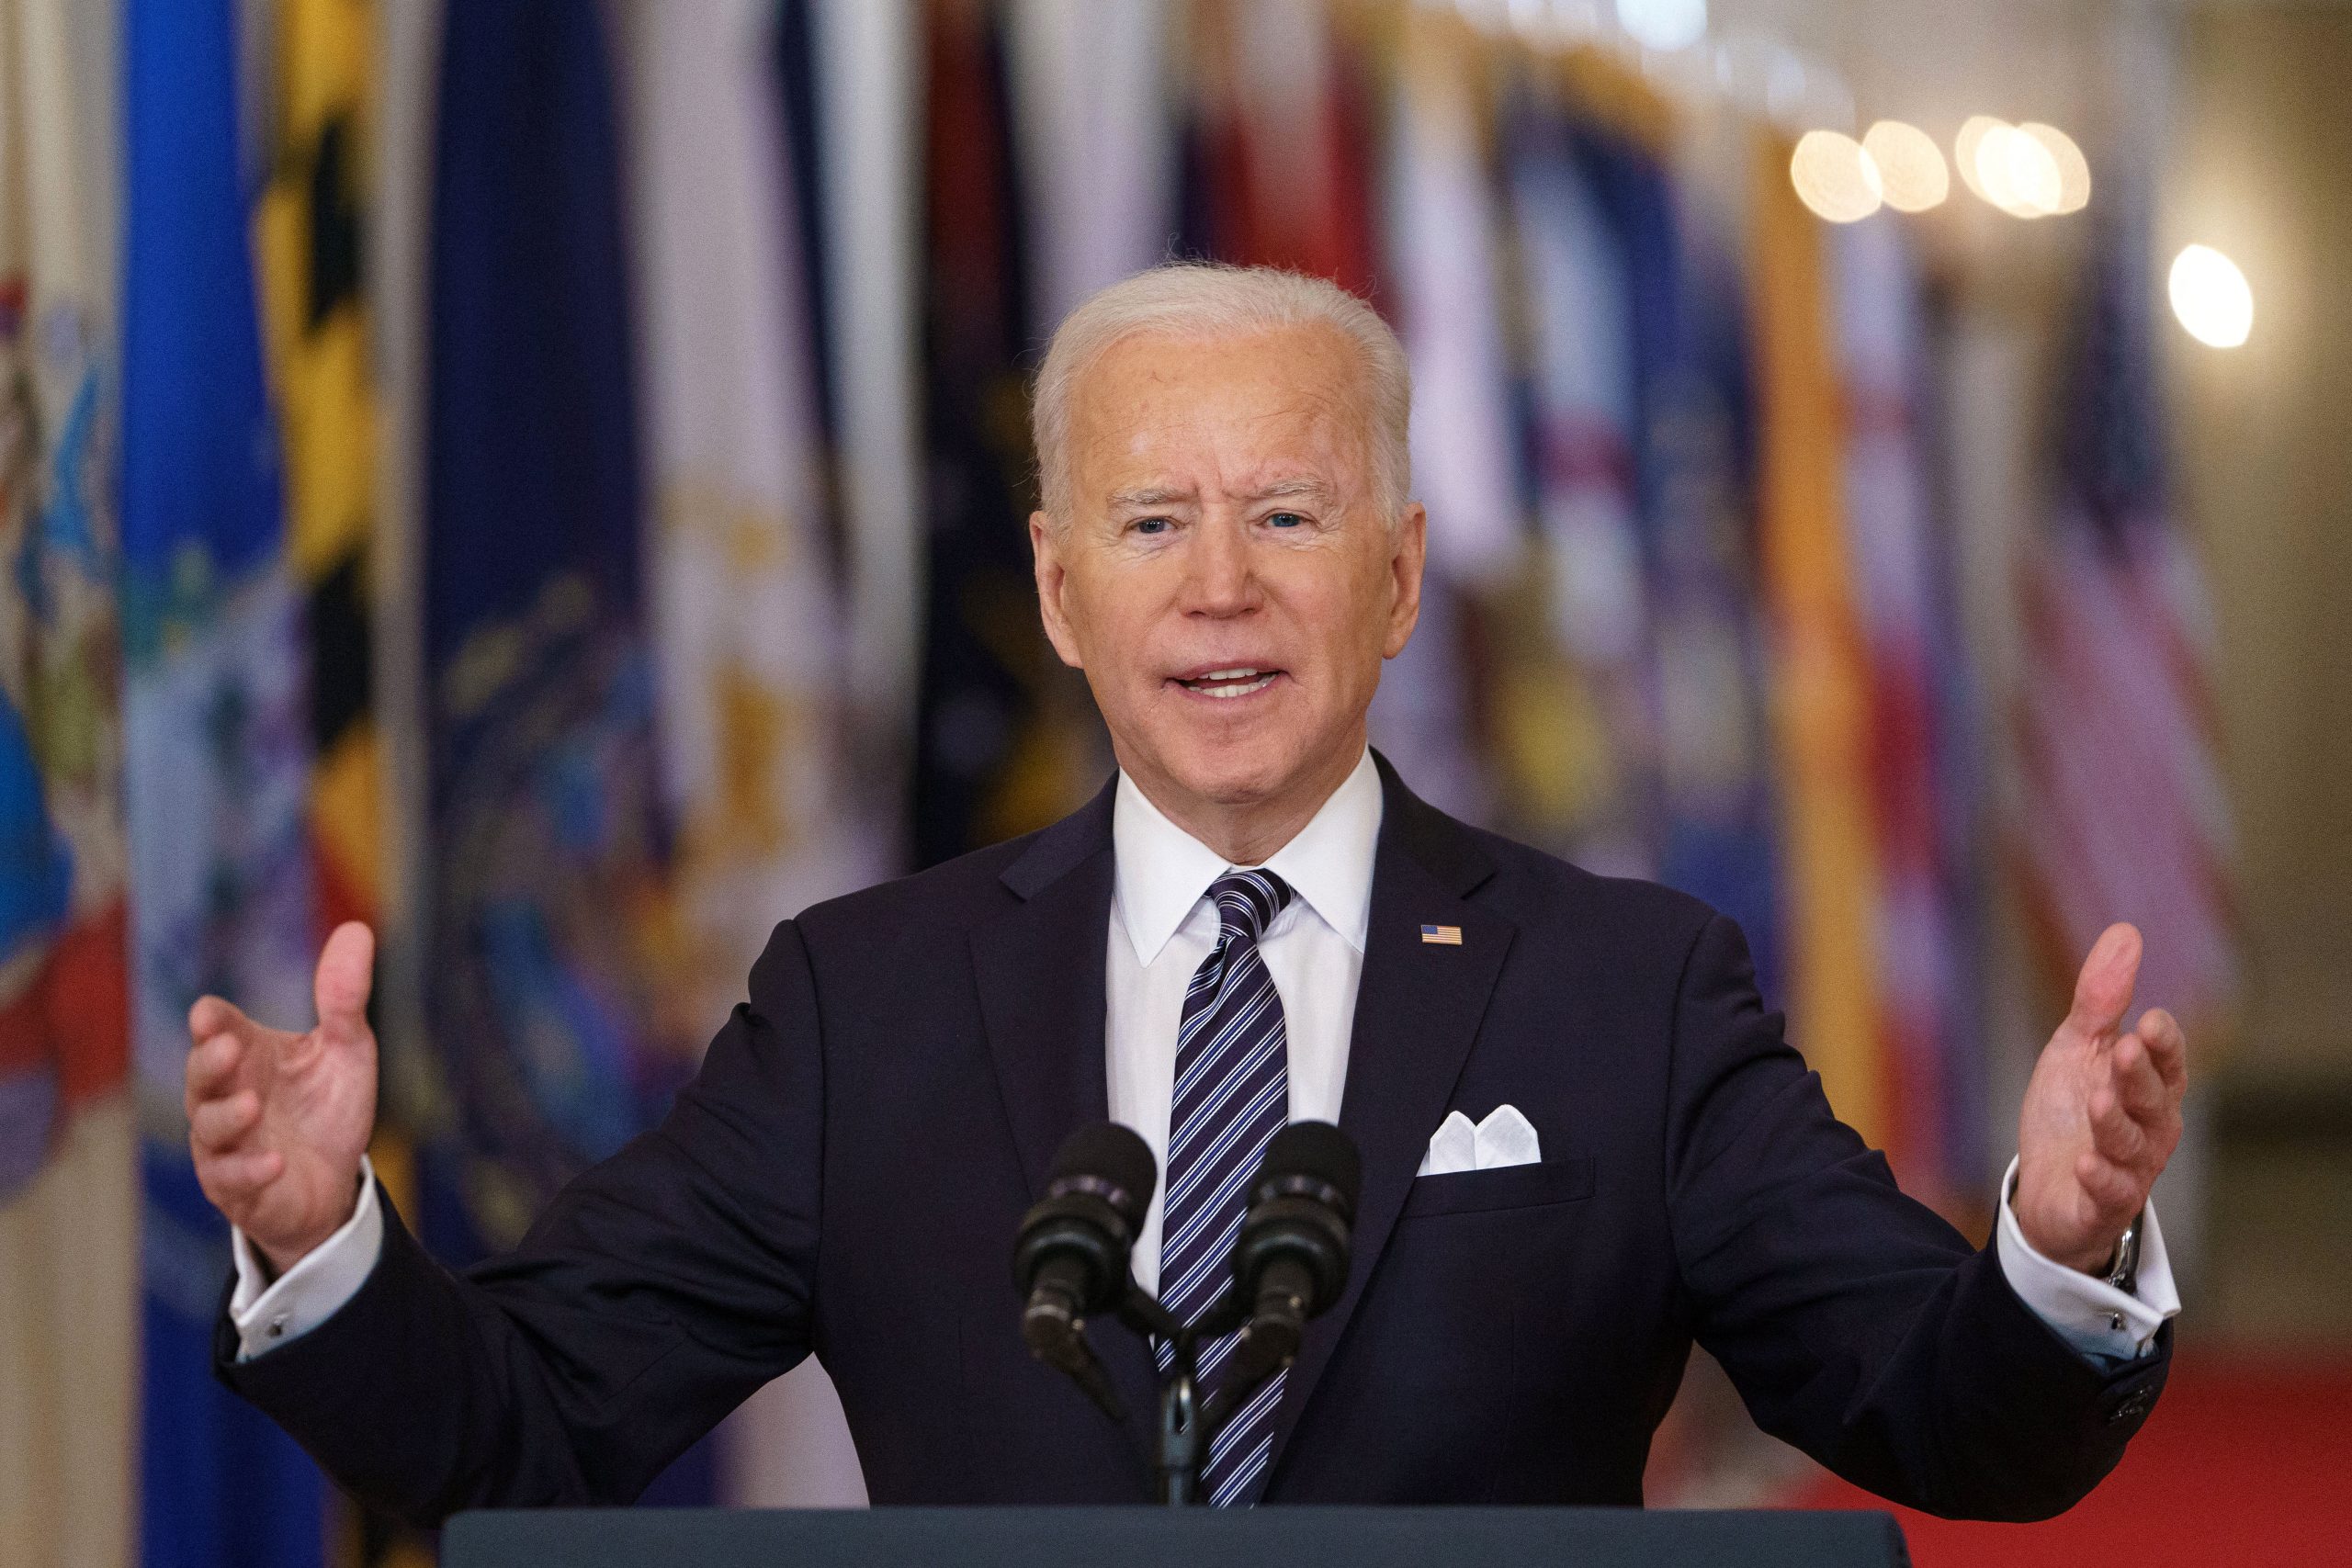 Biden announces ‘incredible achievement’ of 200 million shots across US